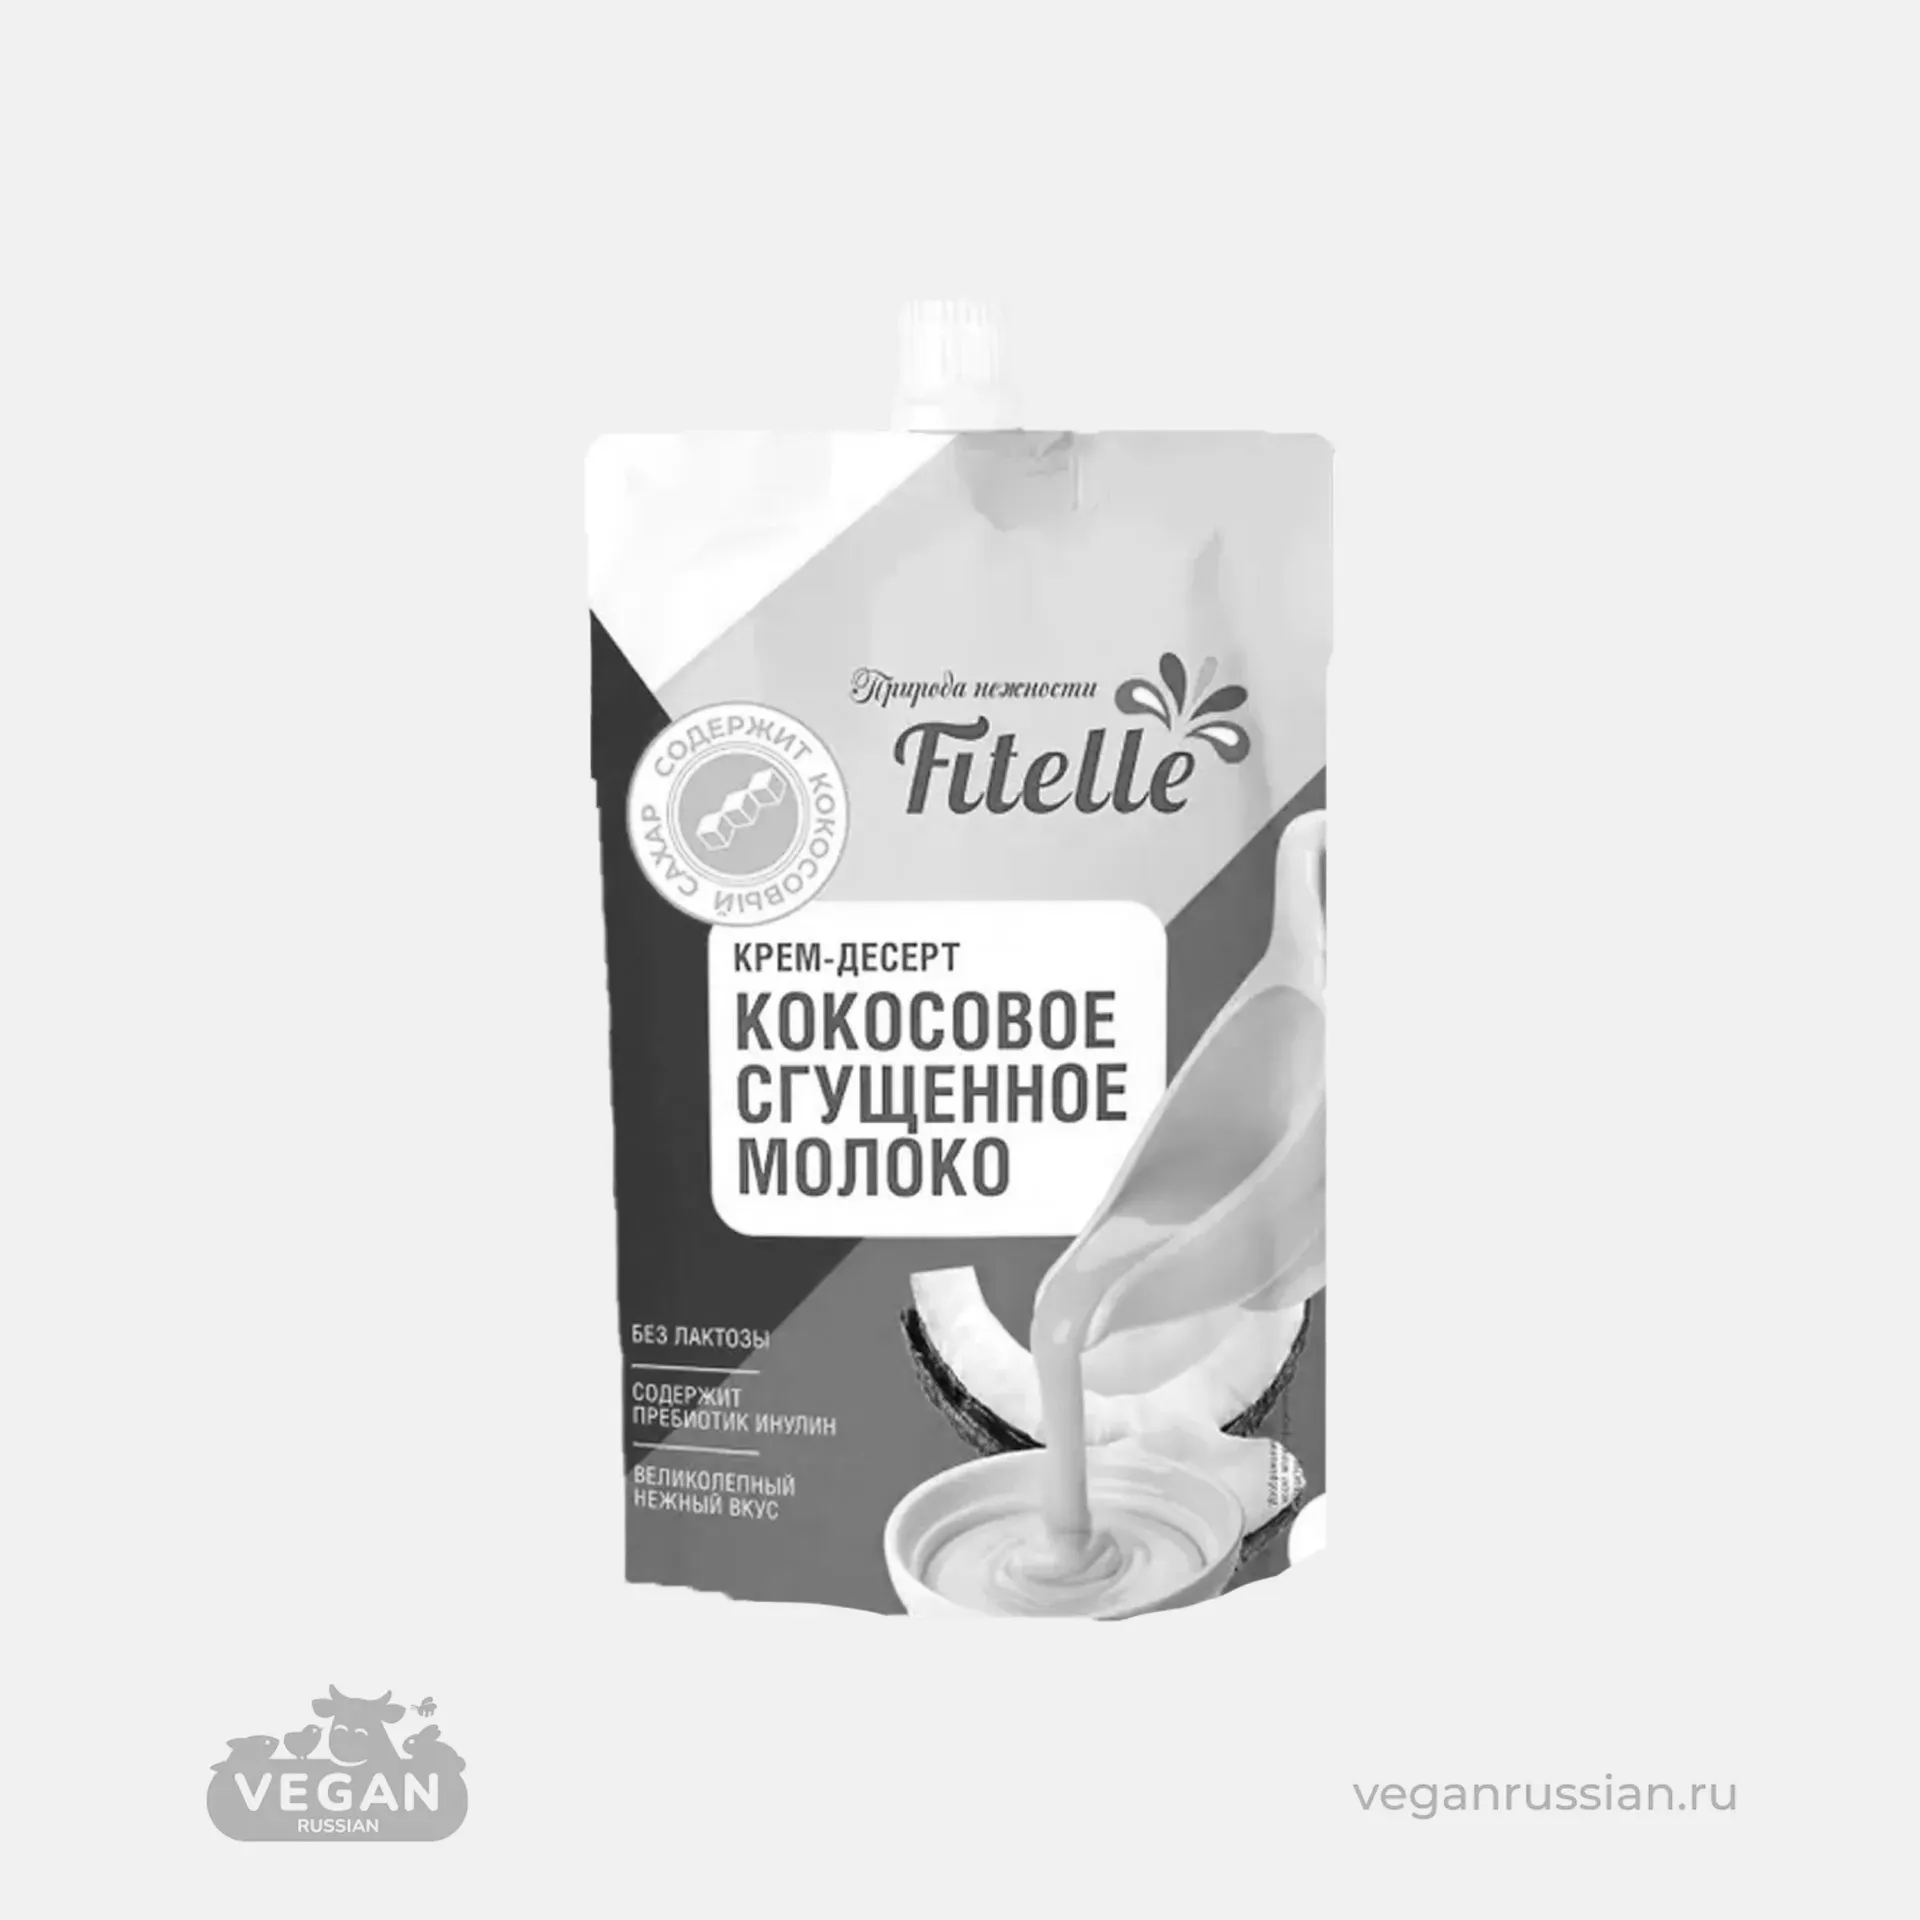 Архив: Сгущённое молоко кокосовое Fitelle 100 г